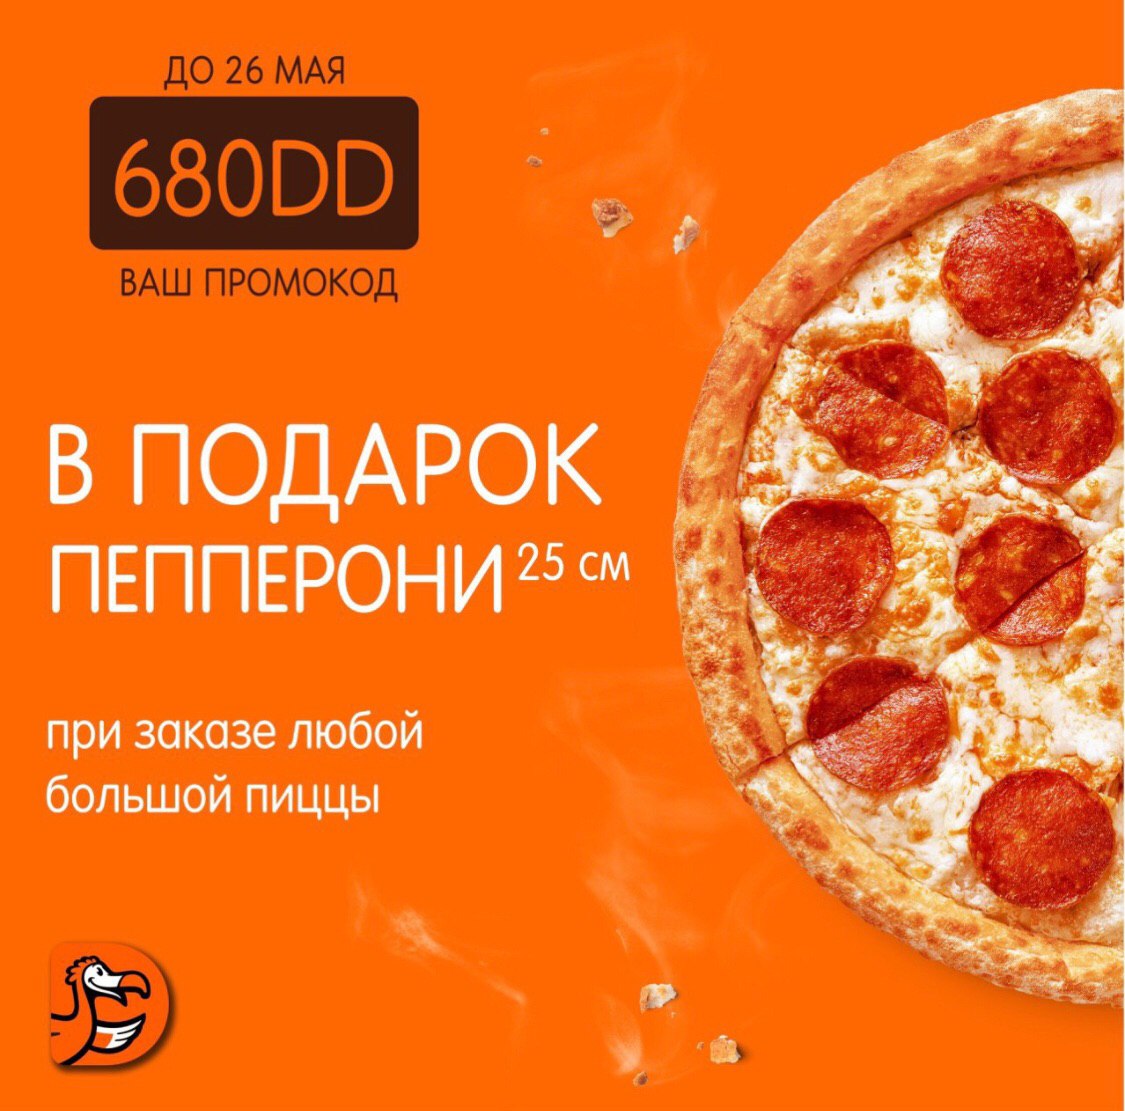 Код для бесплатной пиццы